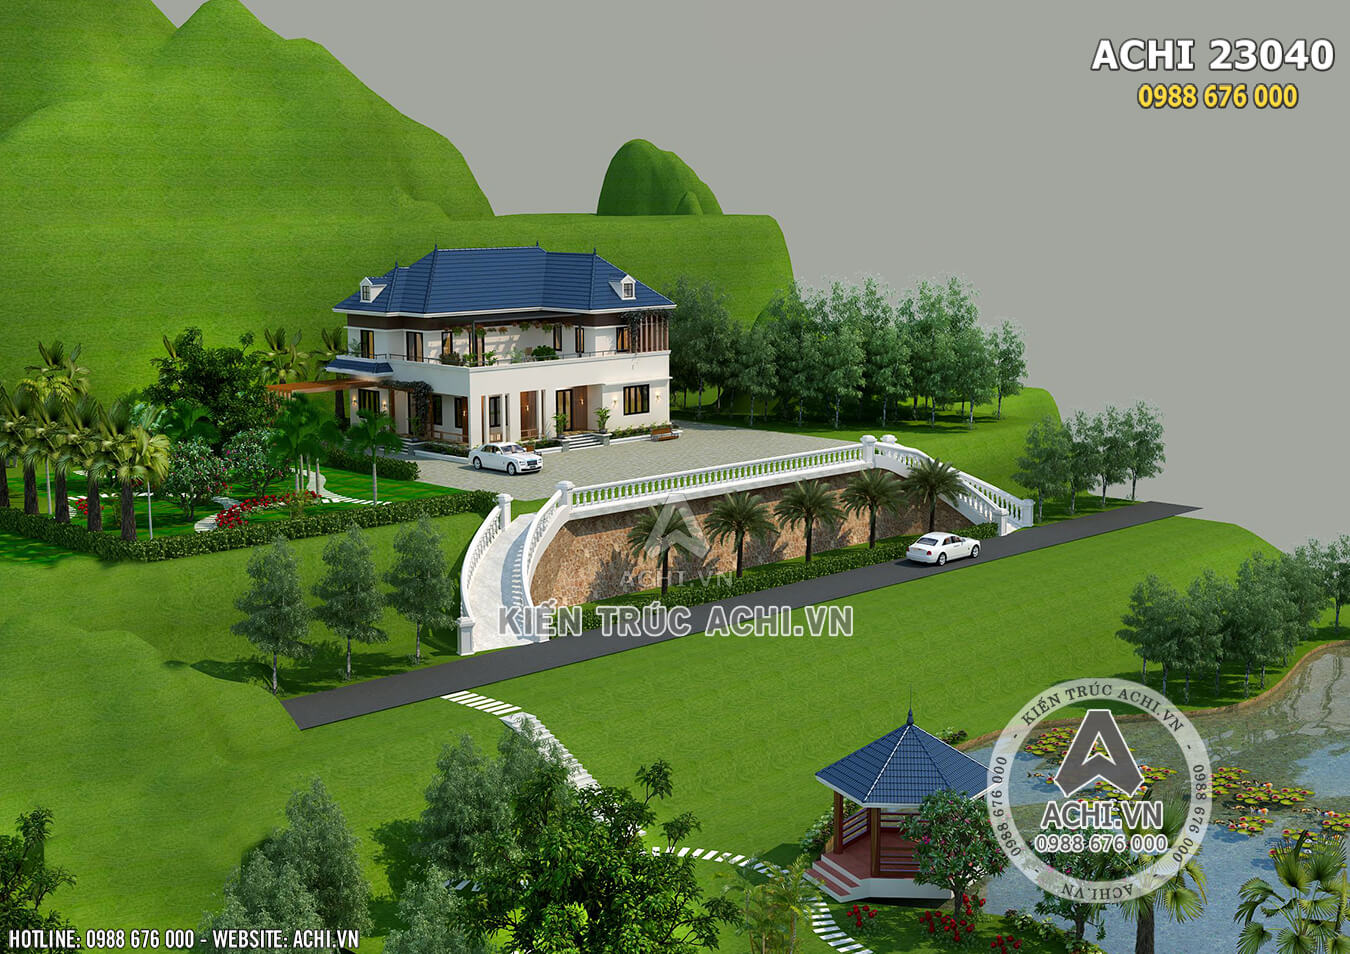 Biệt thự vườn 2 tầng đẹp trên đồi tại Phú Thọ - ACHI 23040